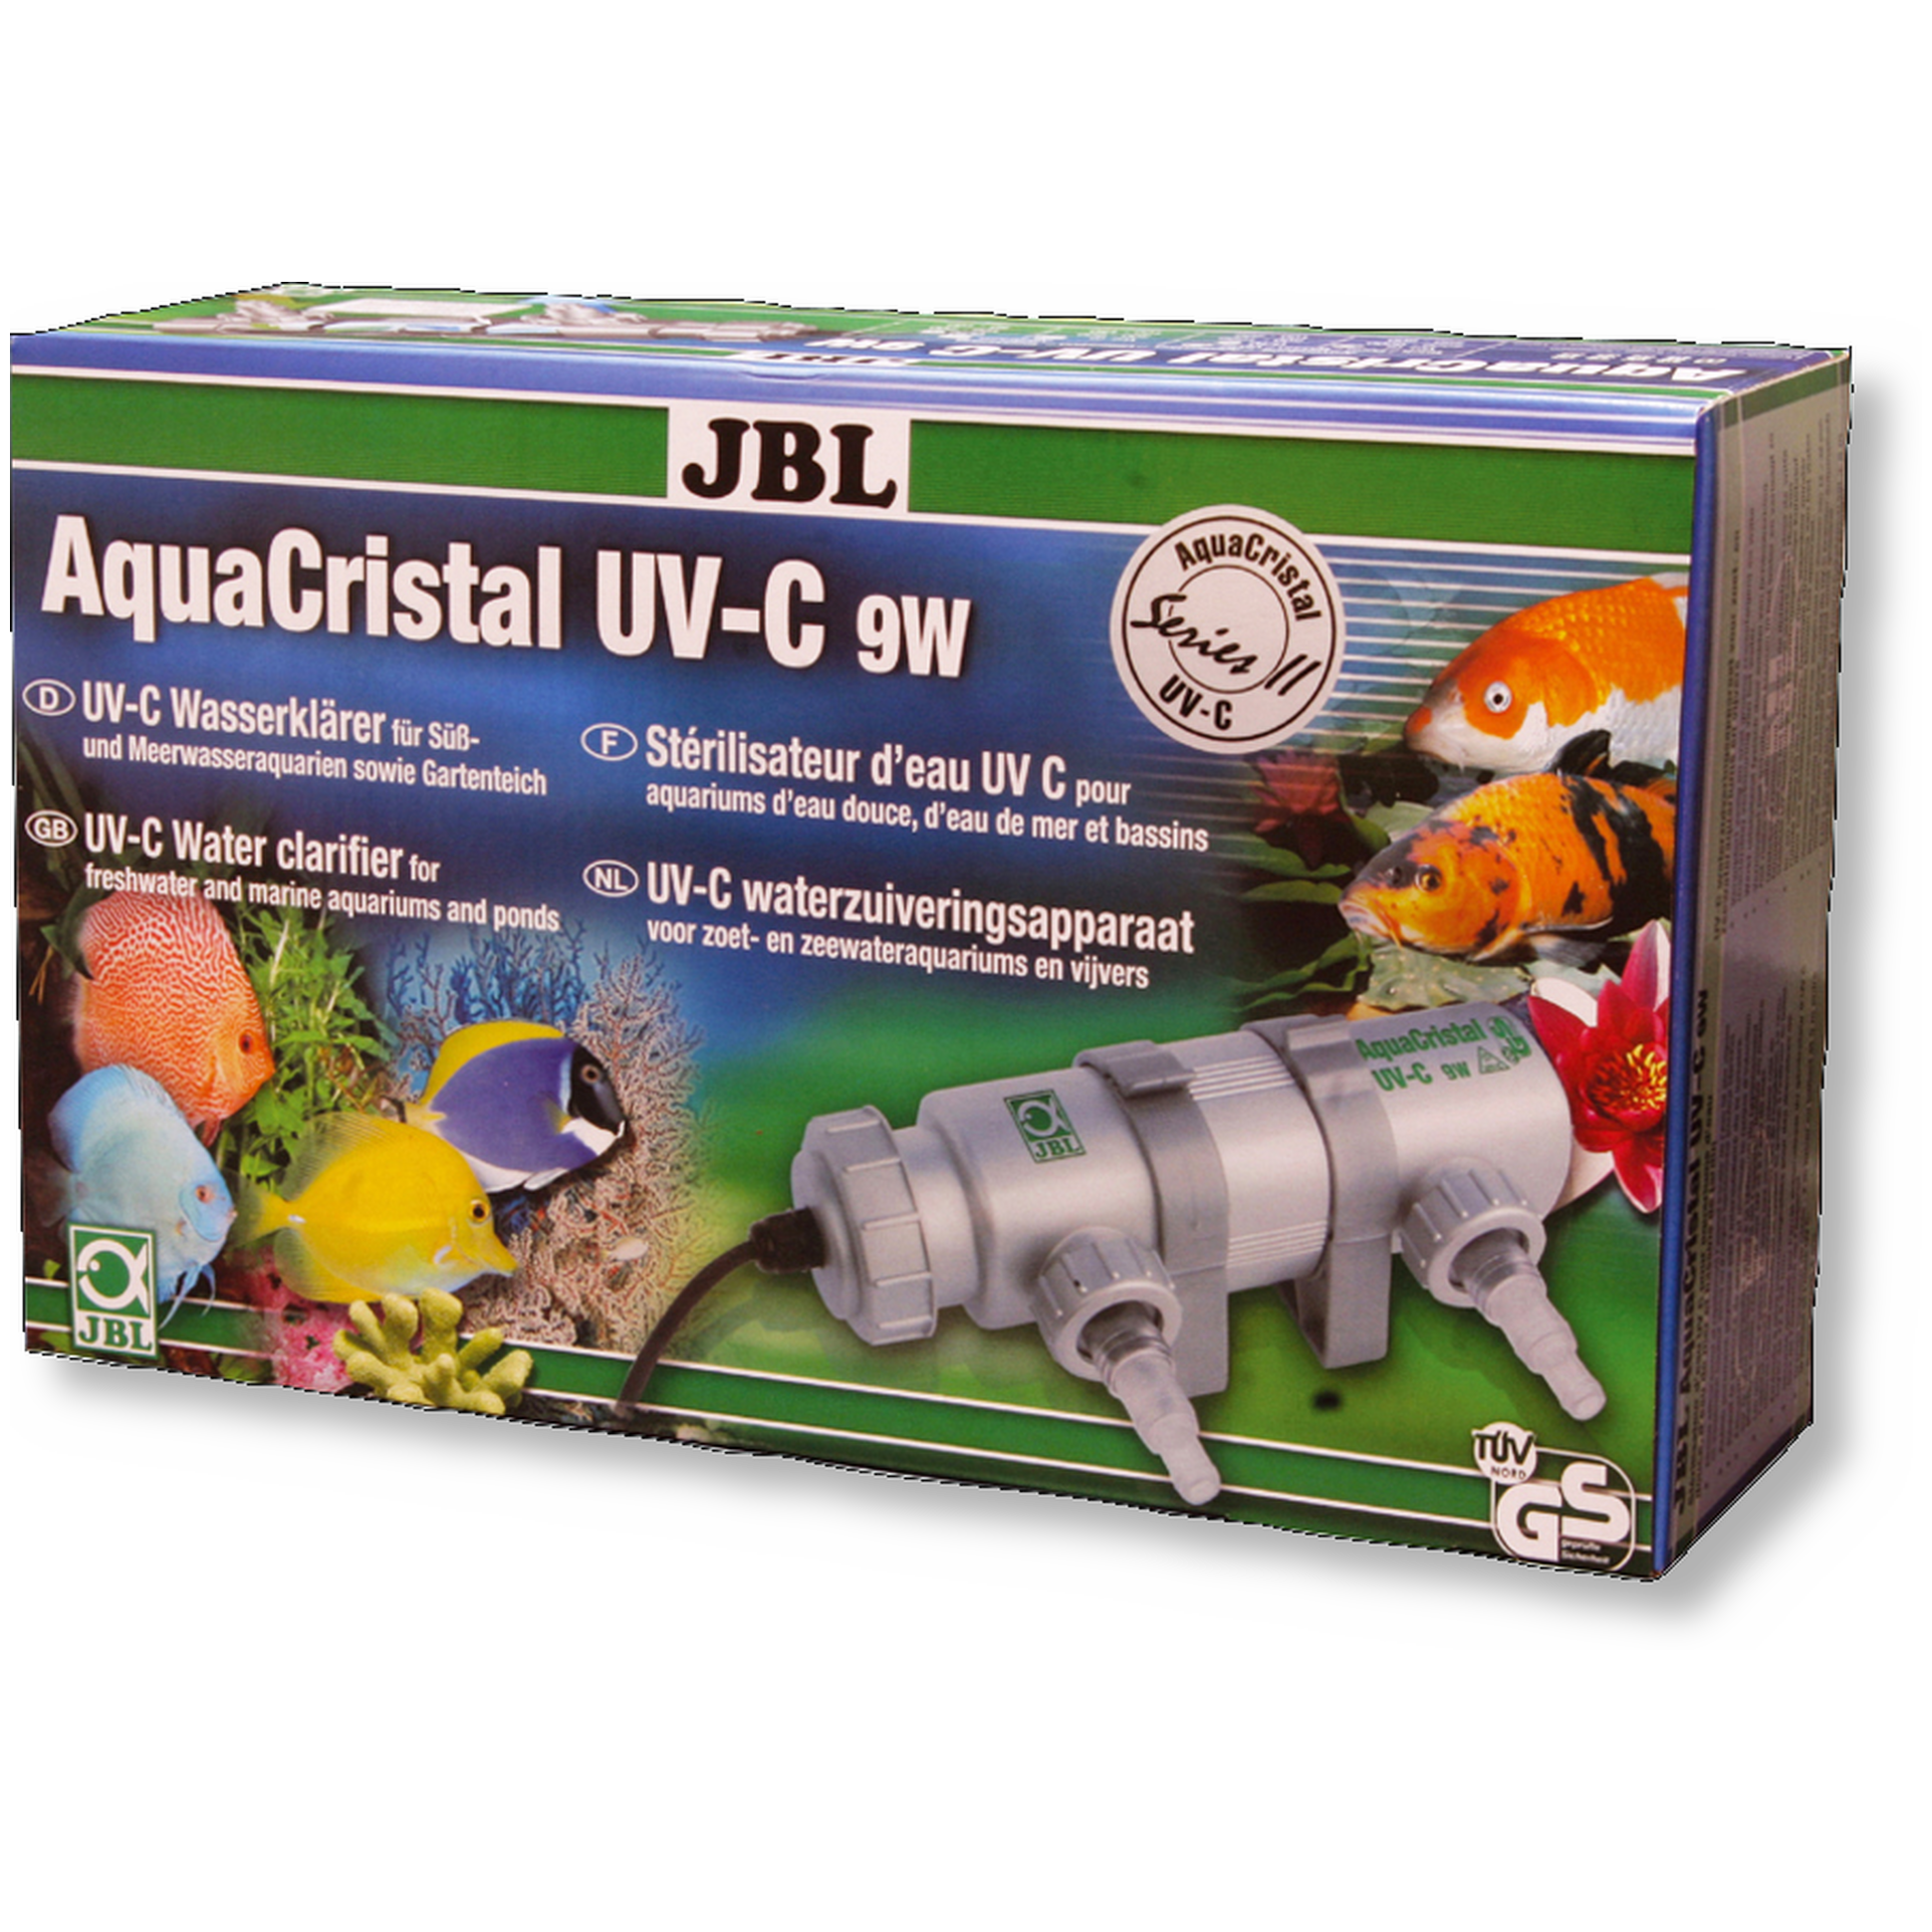 JBL AquaCristal UV-C 9 W